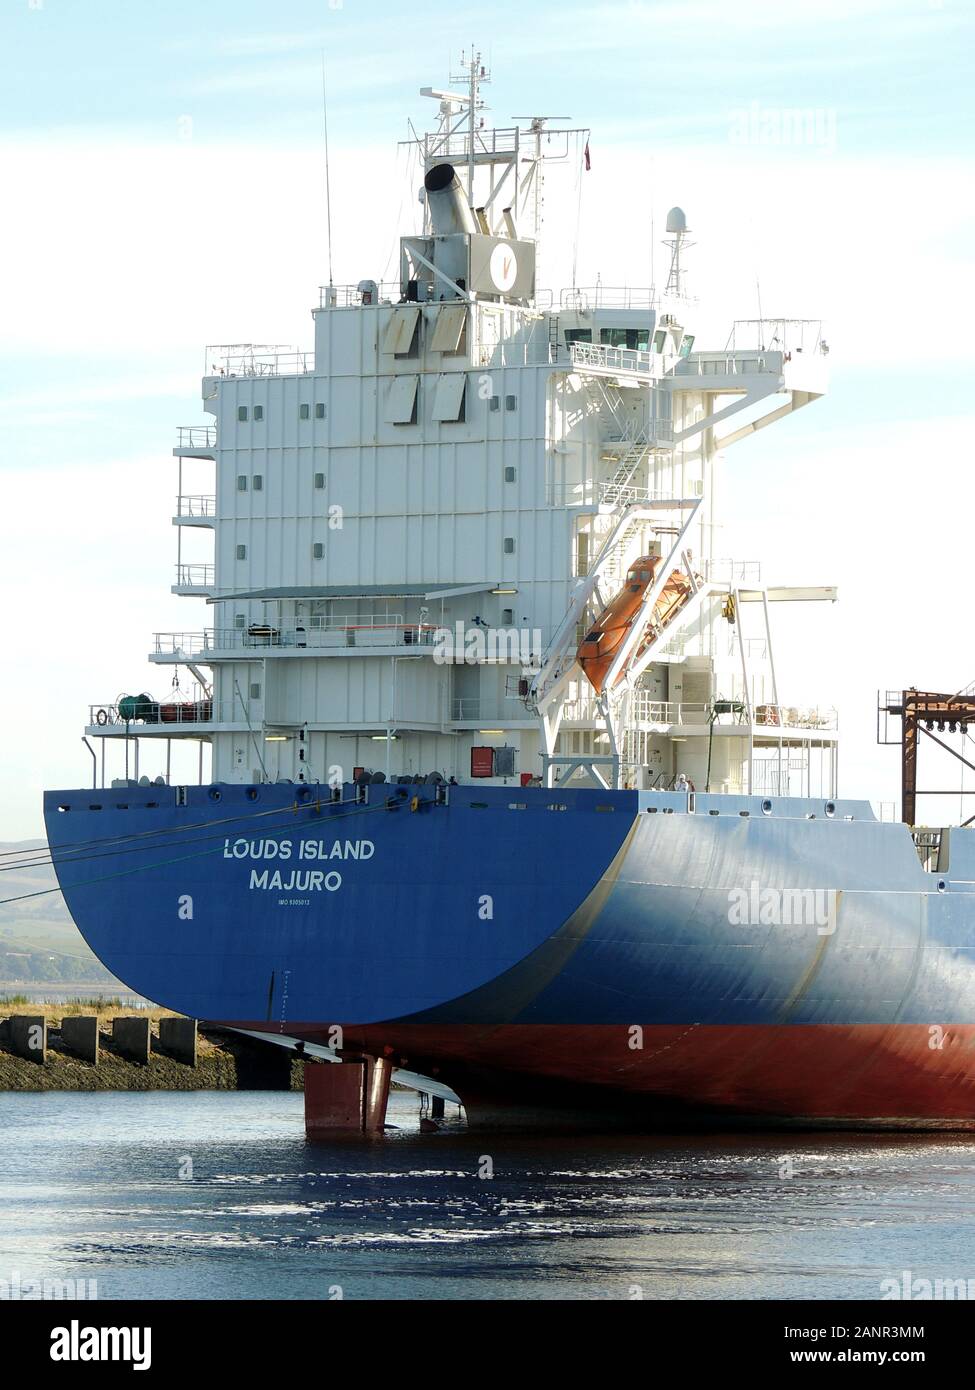 La nave con container Louds Island è vista qui disposta a Great Harbour a Greenock, a causa di una contrazione del commercio mondiale. Foto Stock